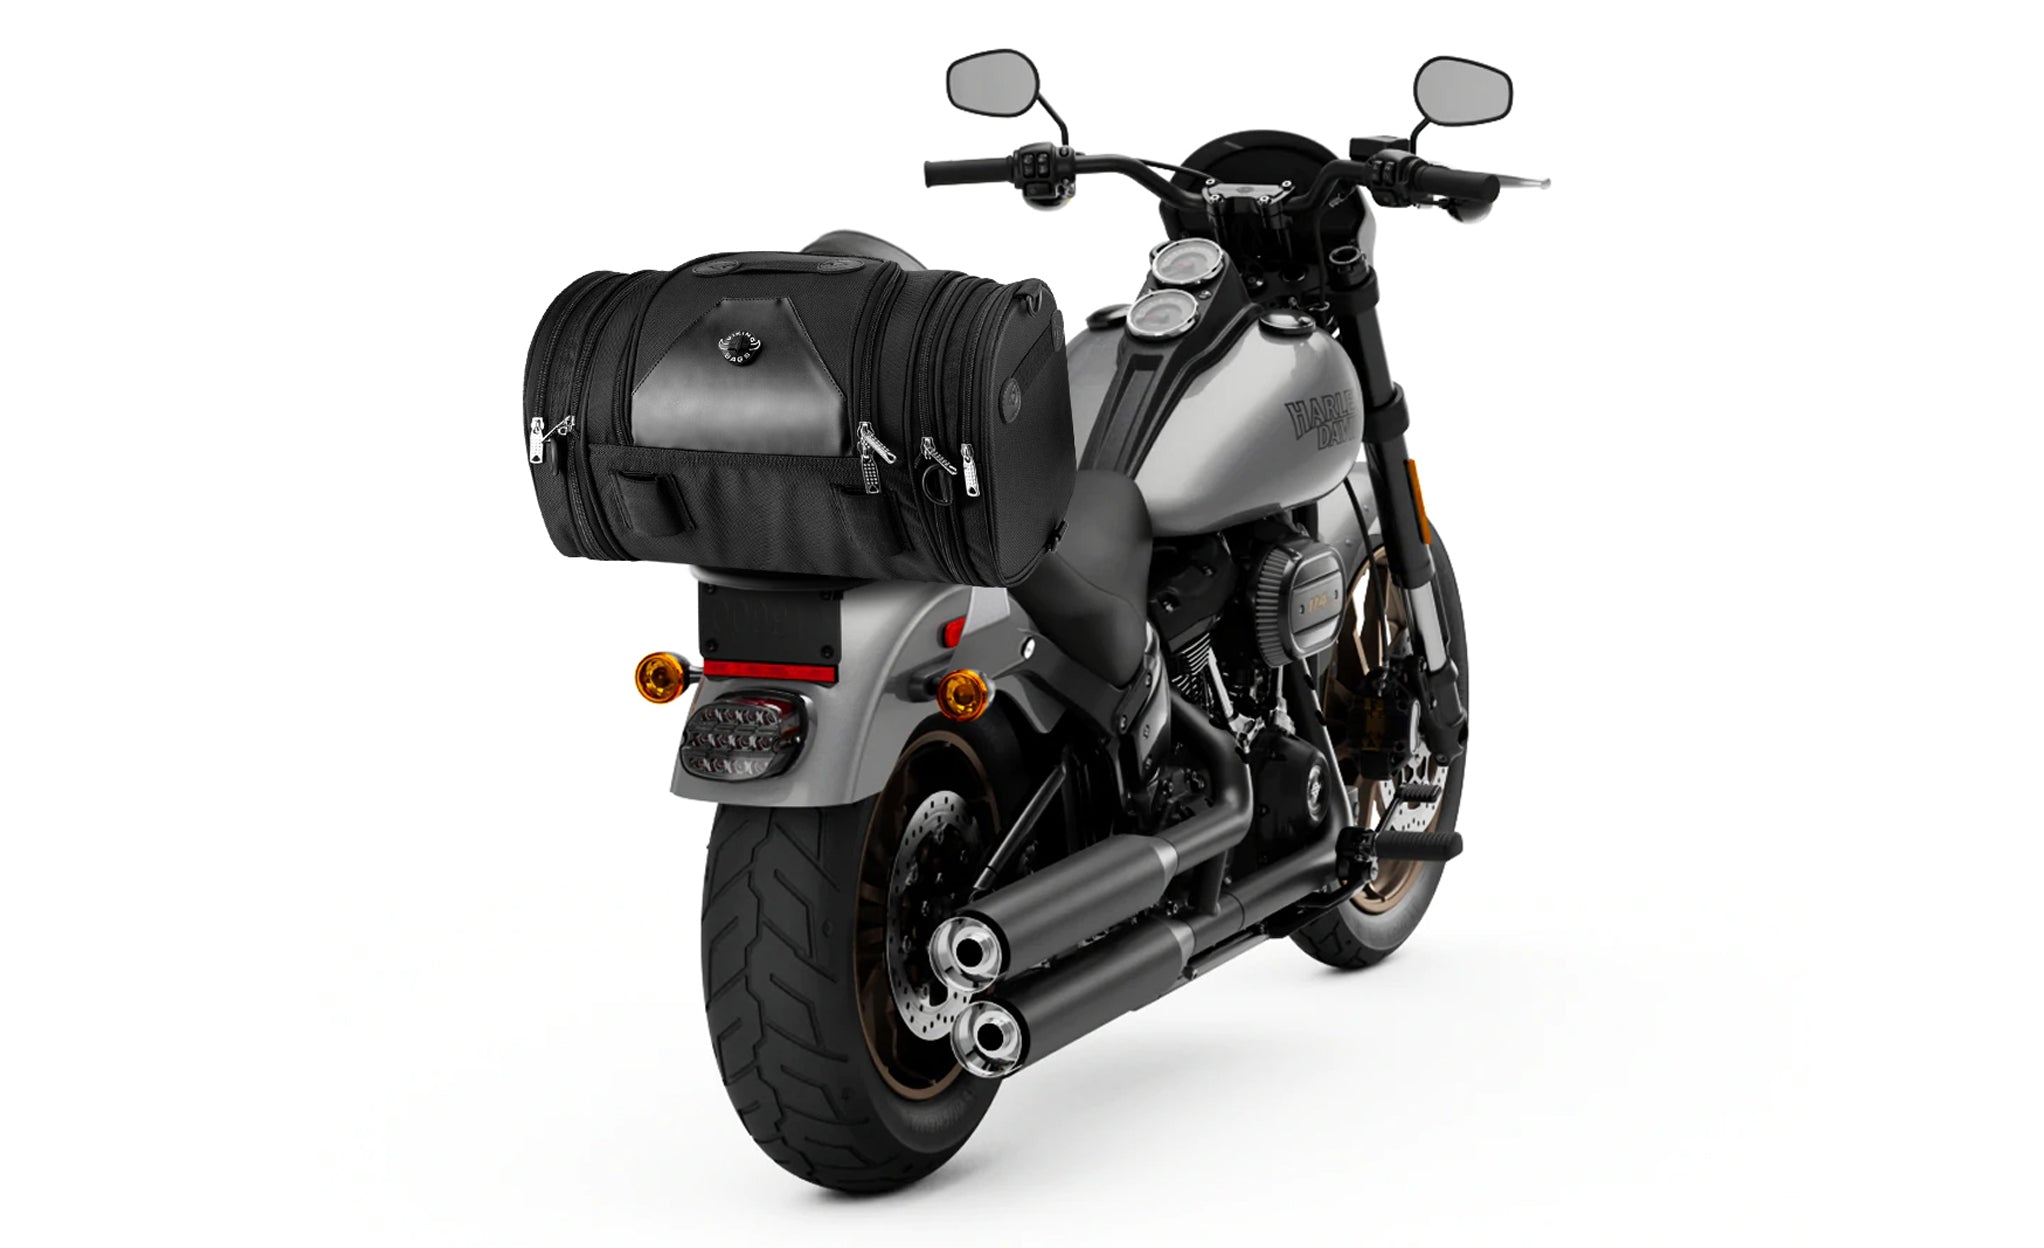 Viking Axwell Small Kawasaki Motorcycle Sissy Bar Bag Bag on Bike View @expand